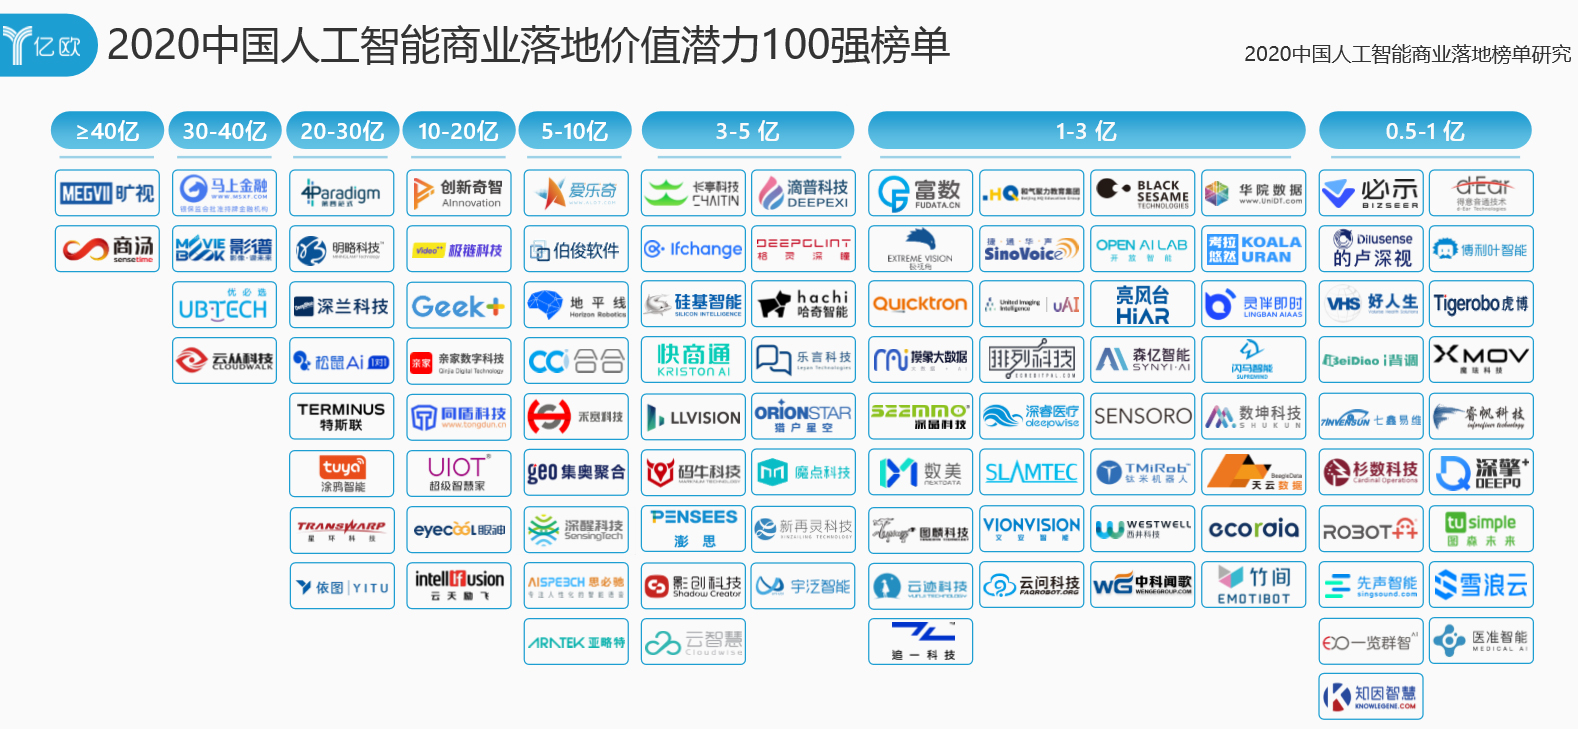 思岚科技荣登“2020 中国人工智能商业落地价值潜力100强”榜单